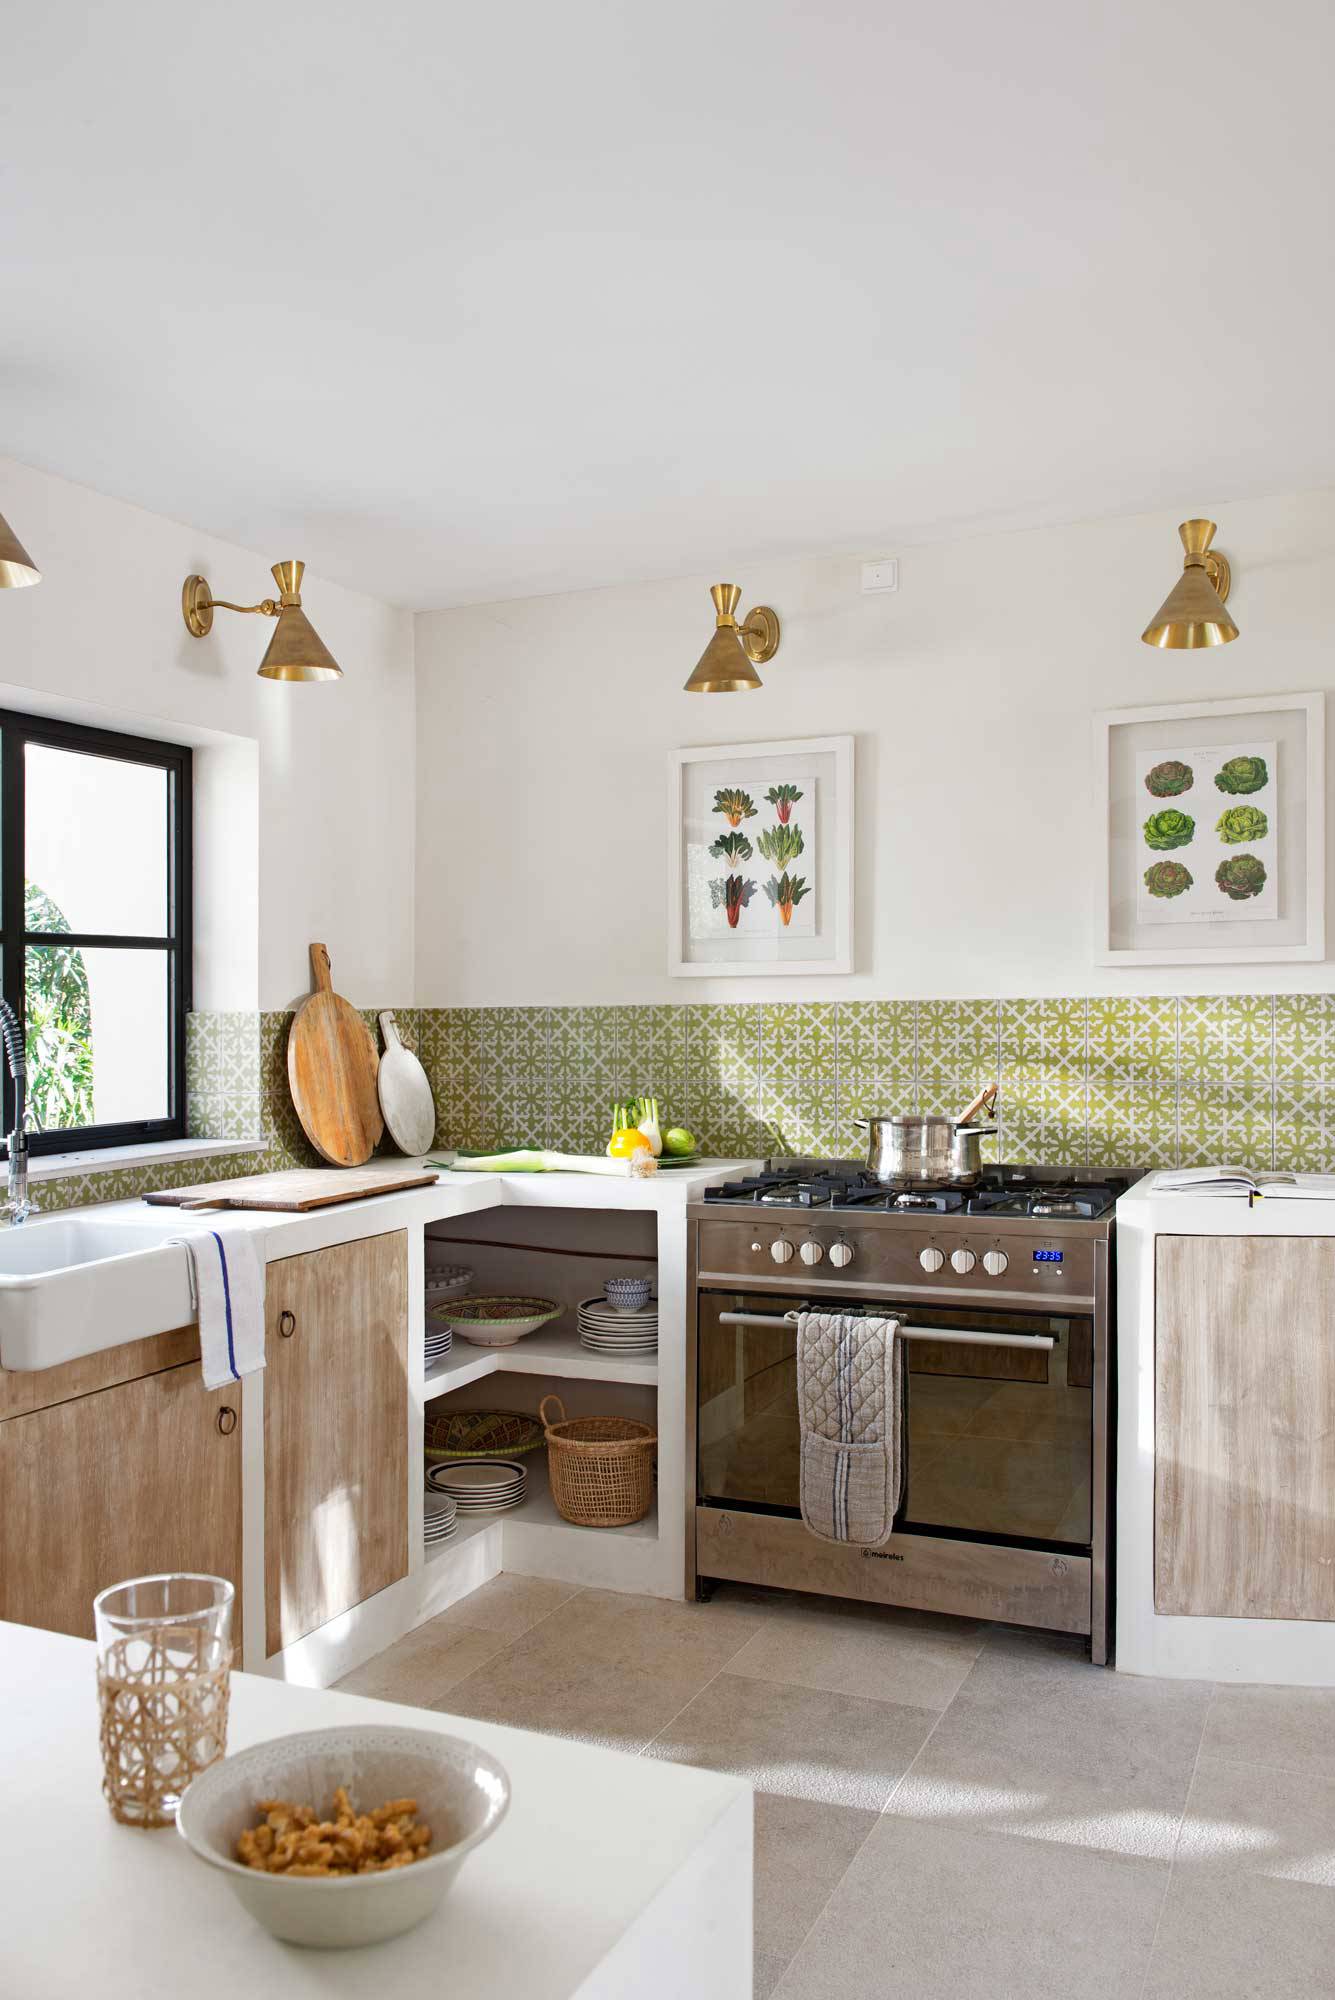 Cocina con muebles de obra y salpicadero de azulejos verdes con dibujos geométricos